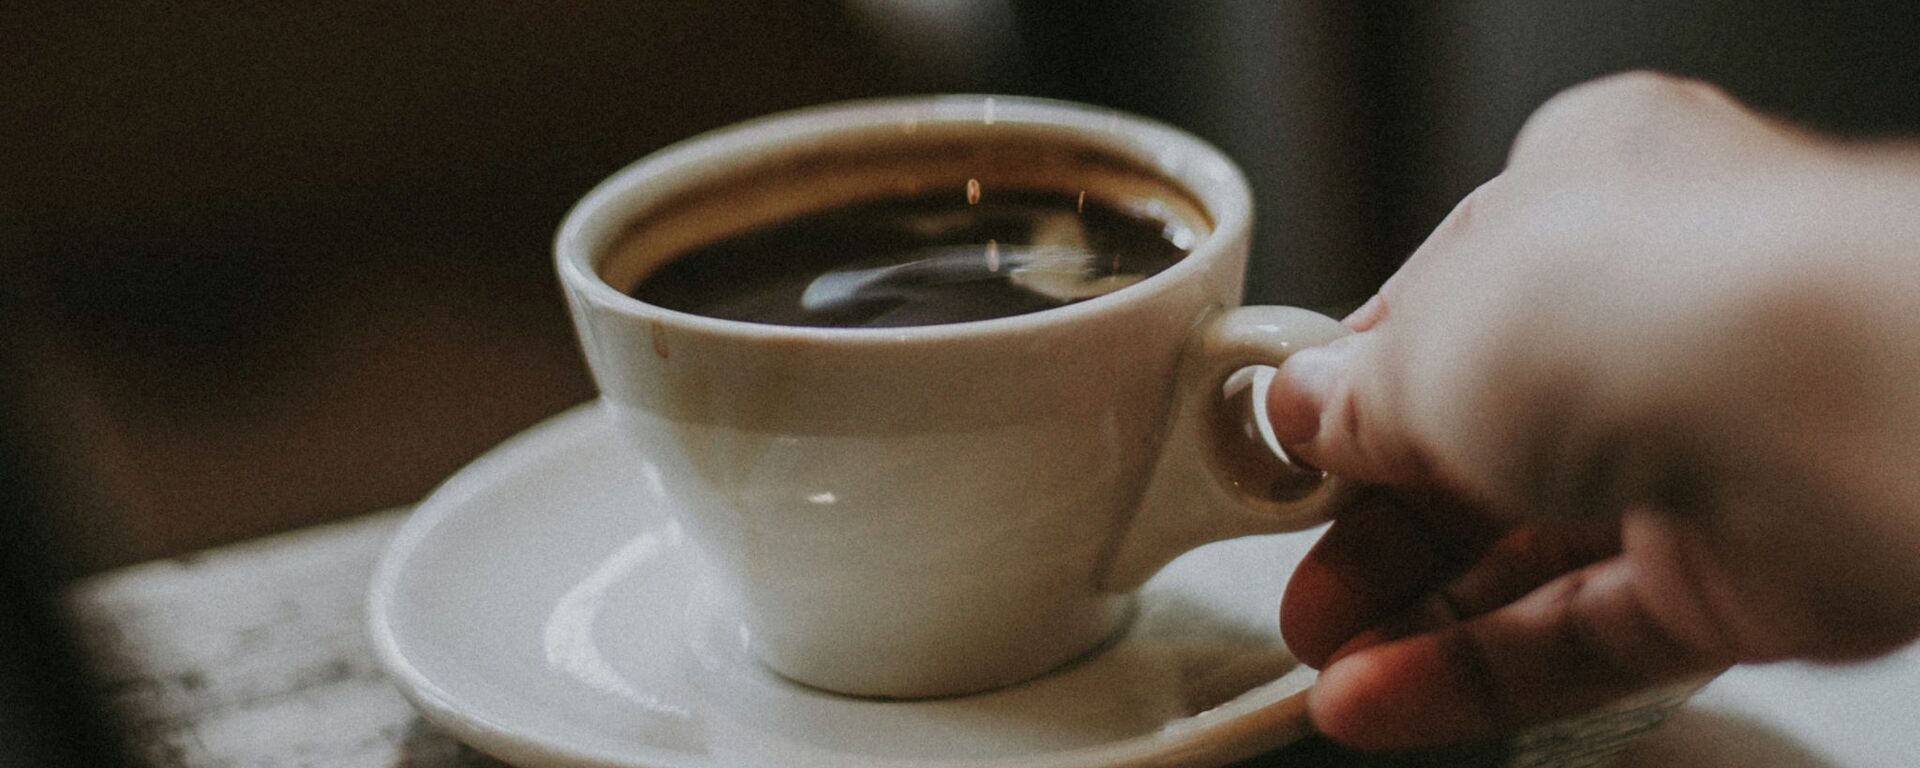 Некоторые исследования показывают, что потребление кофе укрепляет психическое здоровье и снижает риск инсульта - Sputnik Қазақстан, 1920, 02.02.2022